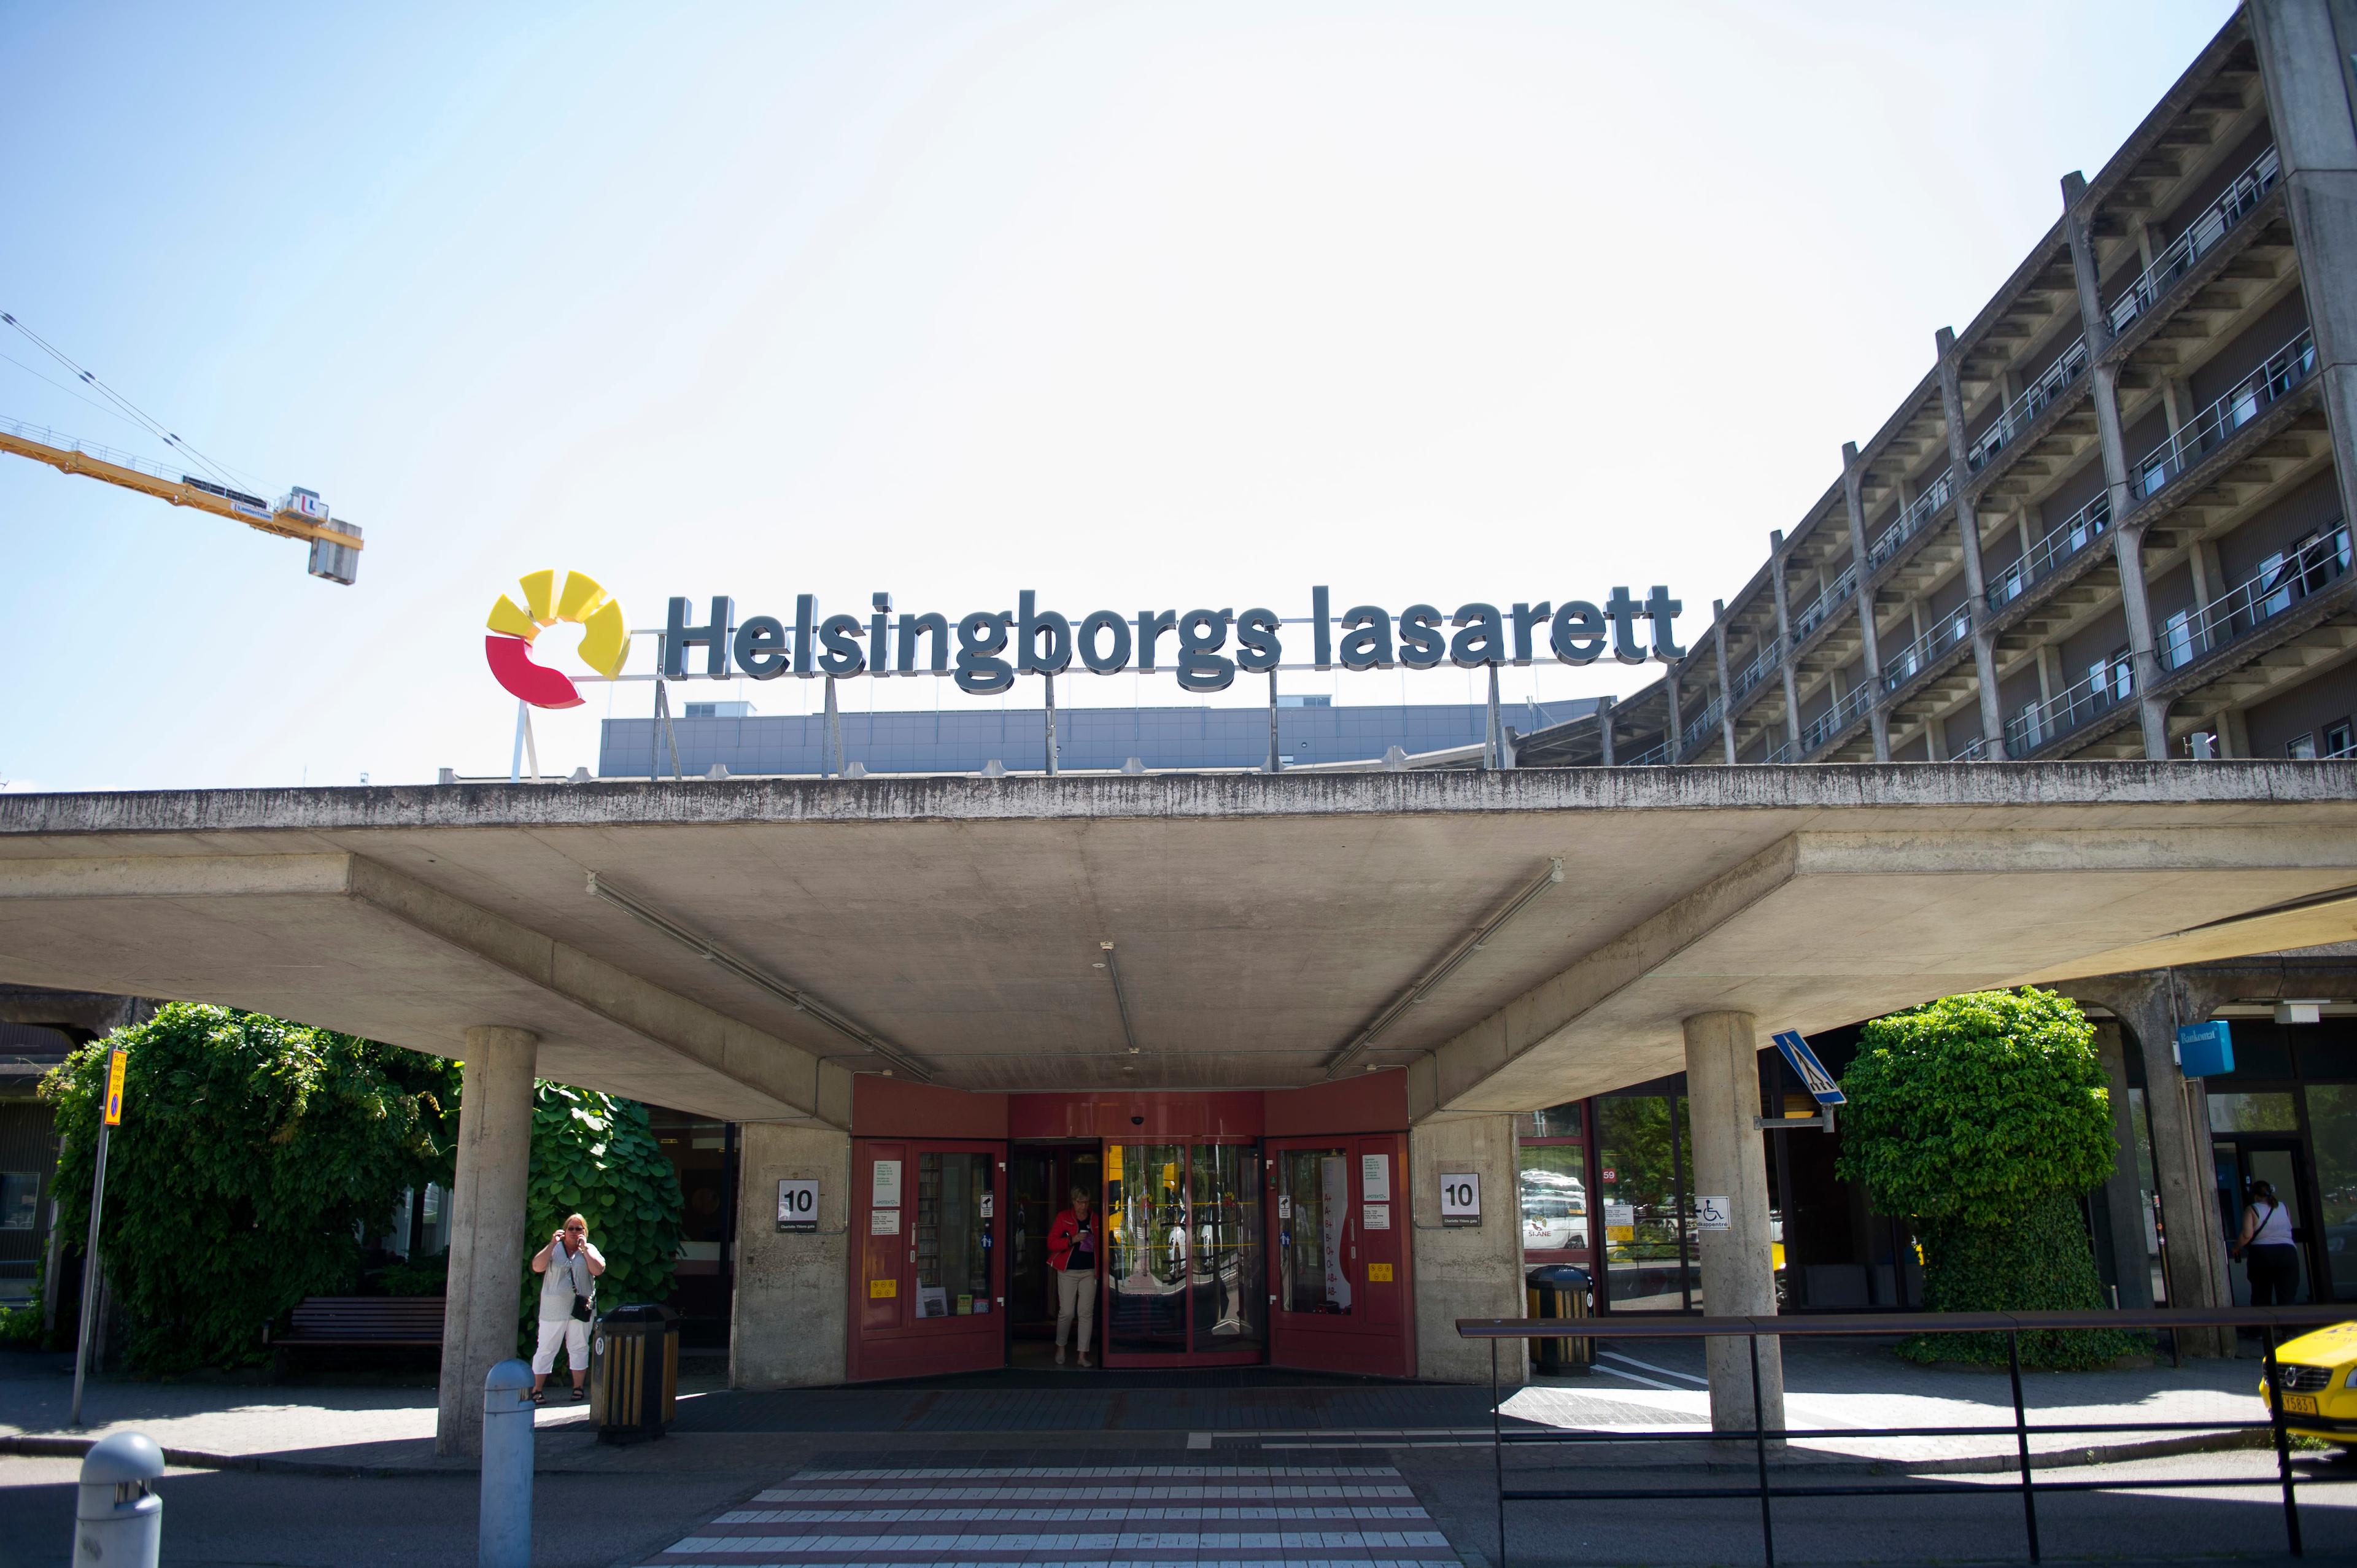 Helsingborgs lasarett ska betala vite för felplacerade sängar. Arkivbild. Foto: Björn Lindgren/TT